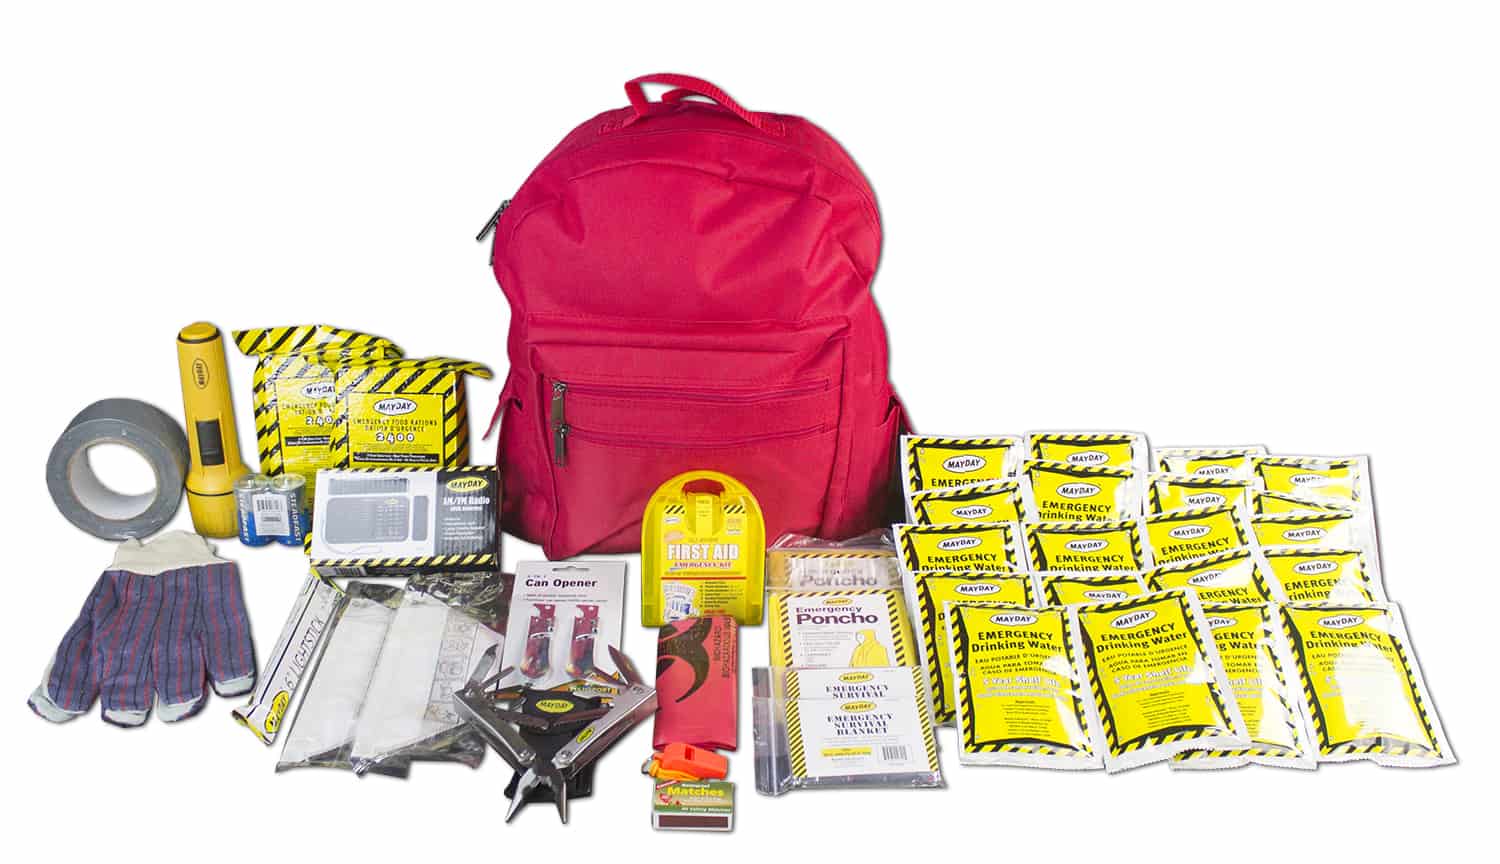 72 Hour Emergency Survival Kit - 2 People